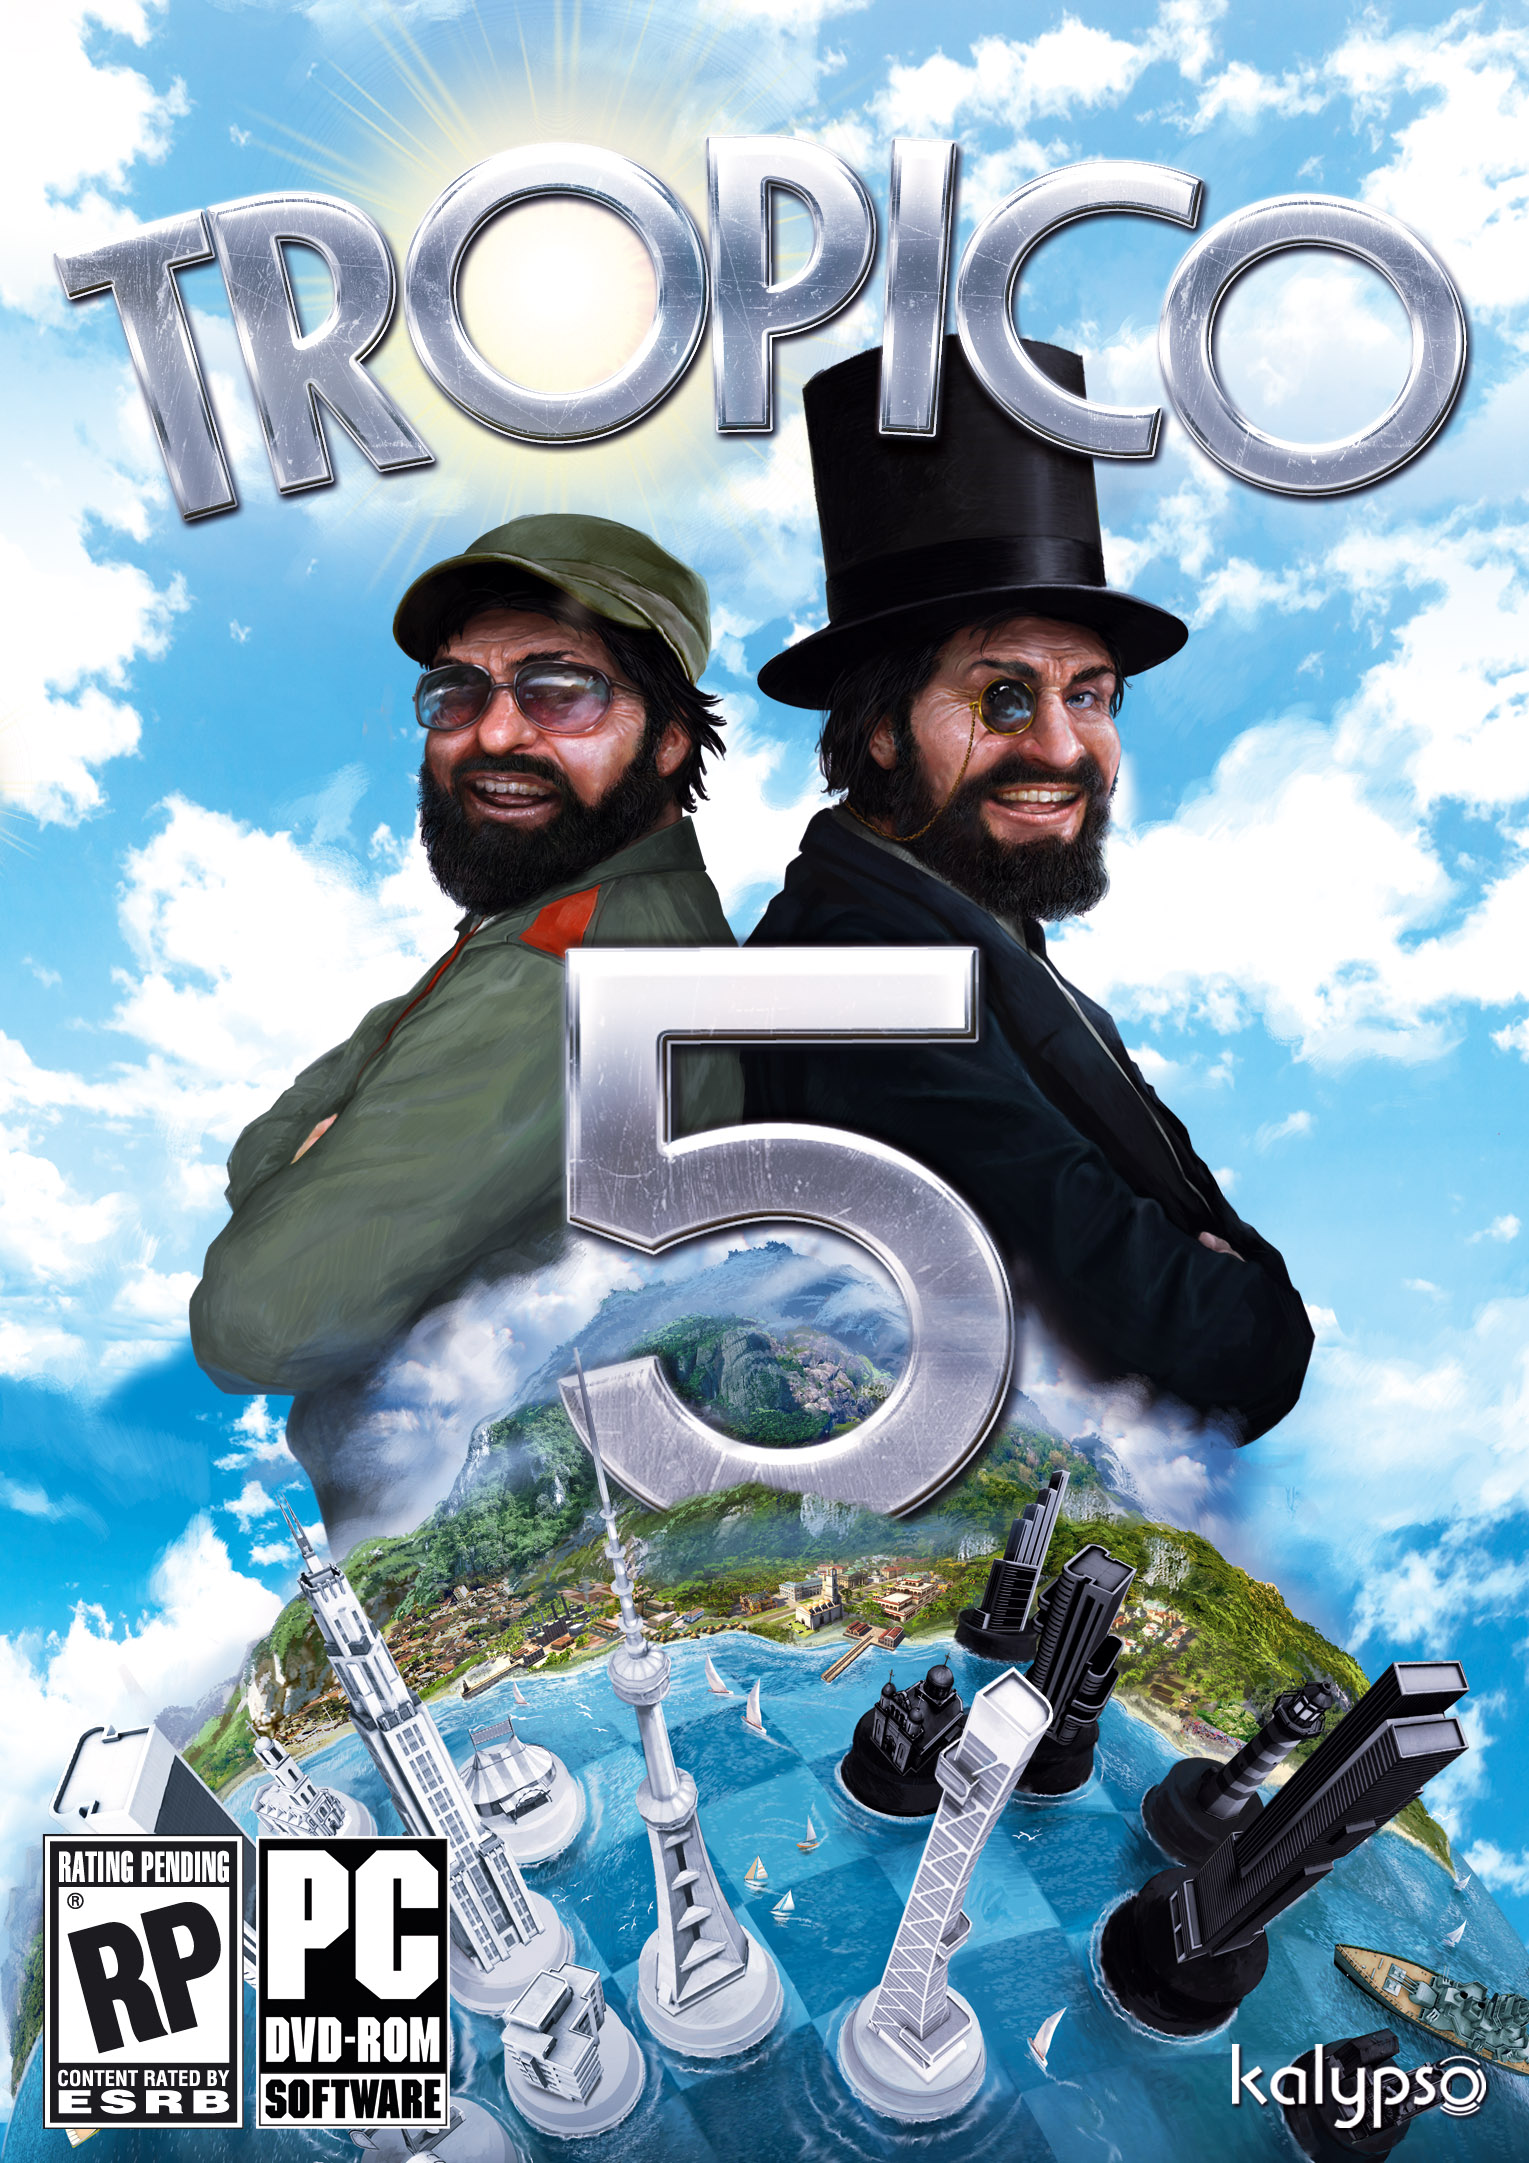 tropico 1 free full download